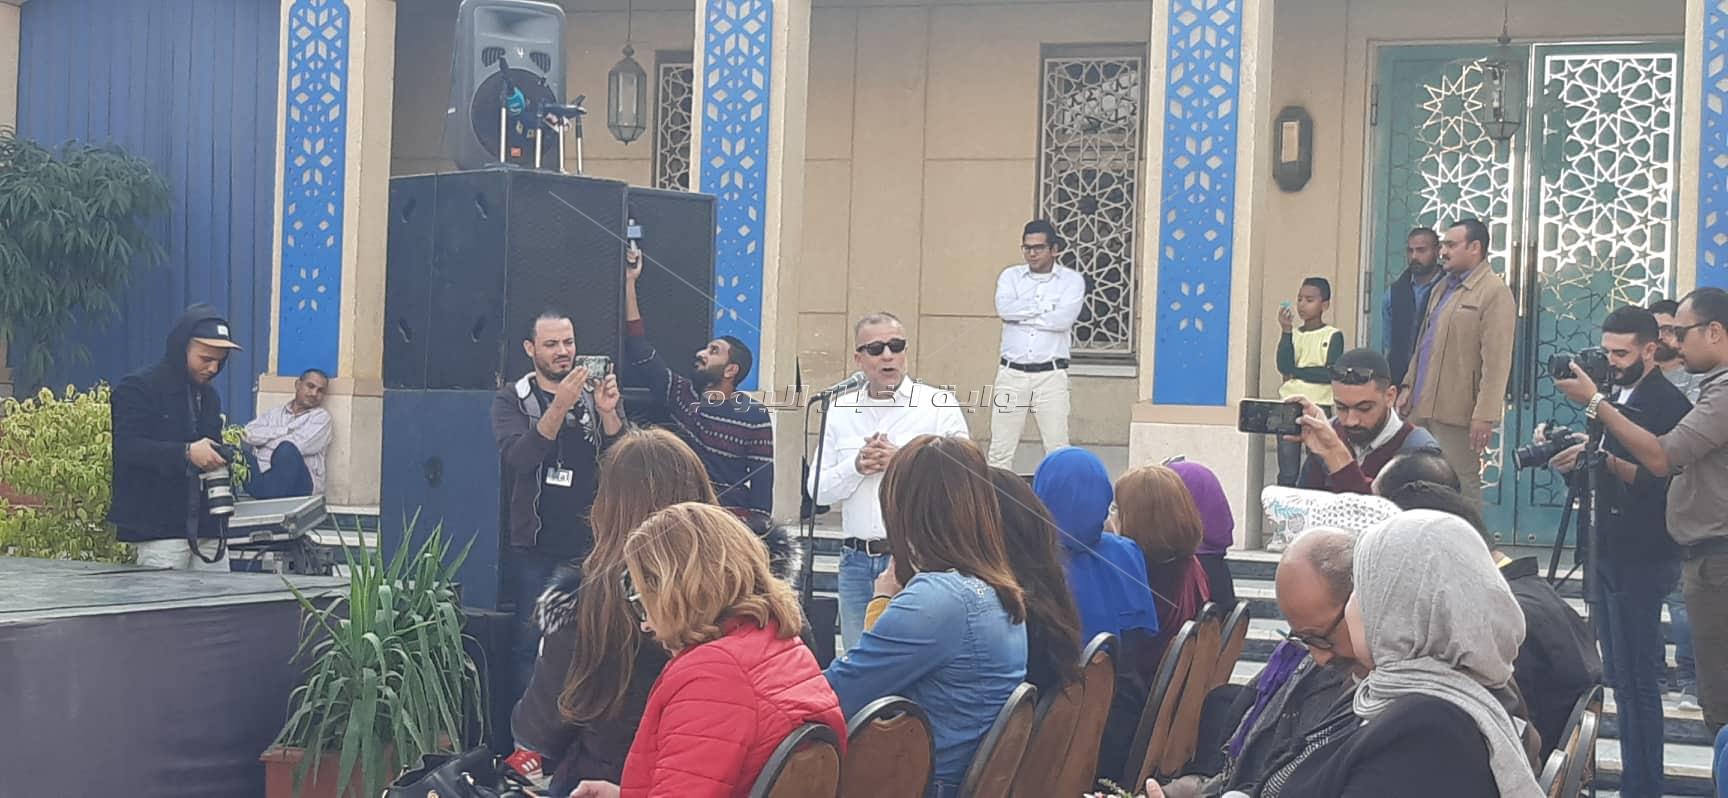  ندوة "شريف عرفة" بمهرجان القاهرة السينمائي